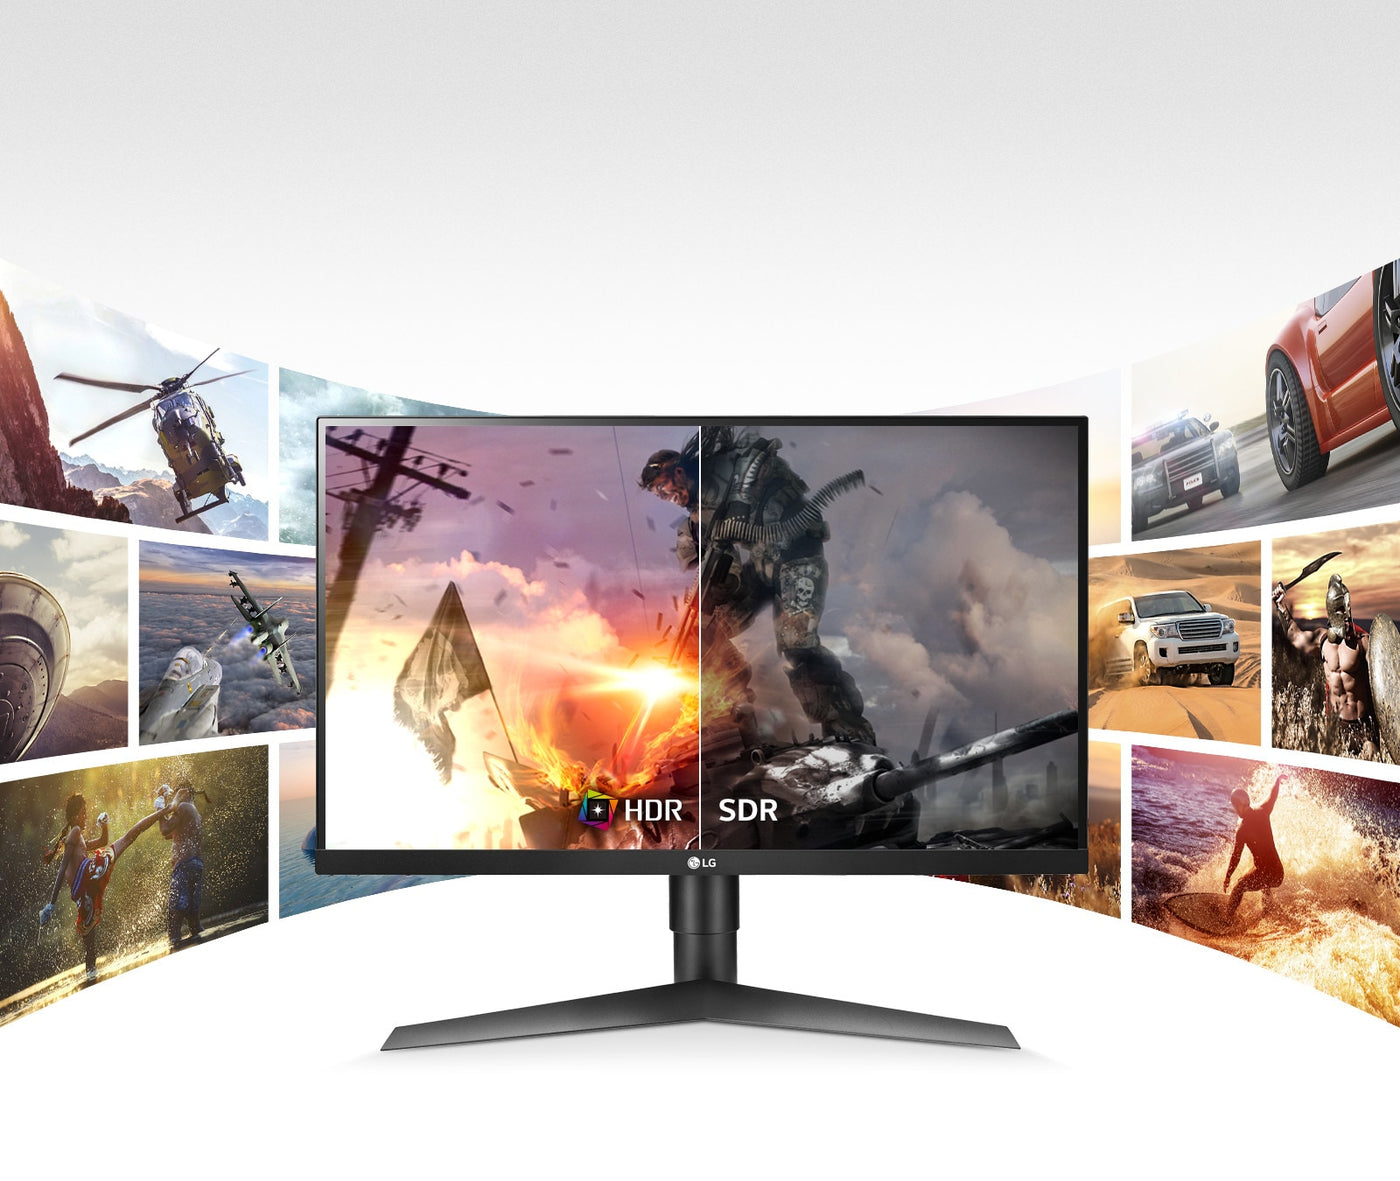  LG 27GL63T monitor HDR10 képminősége a hagyományos képminőséghez képest